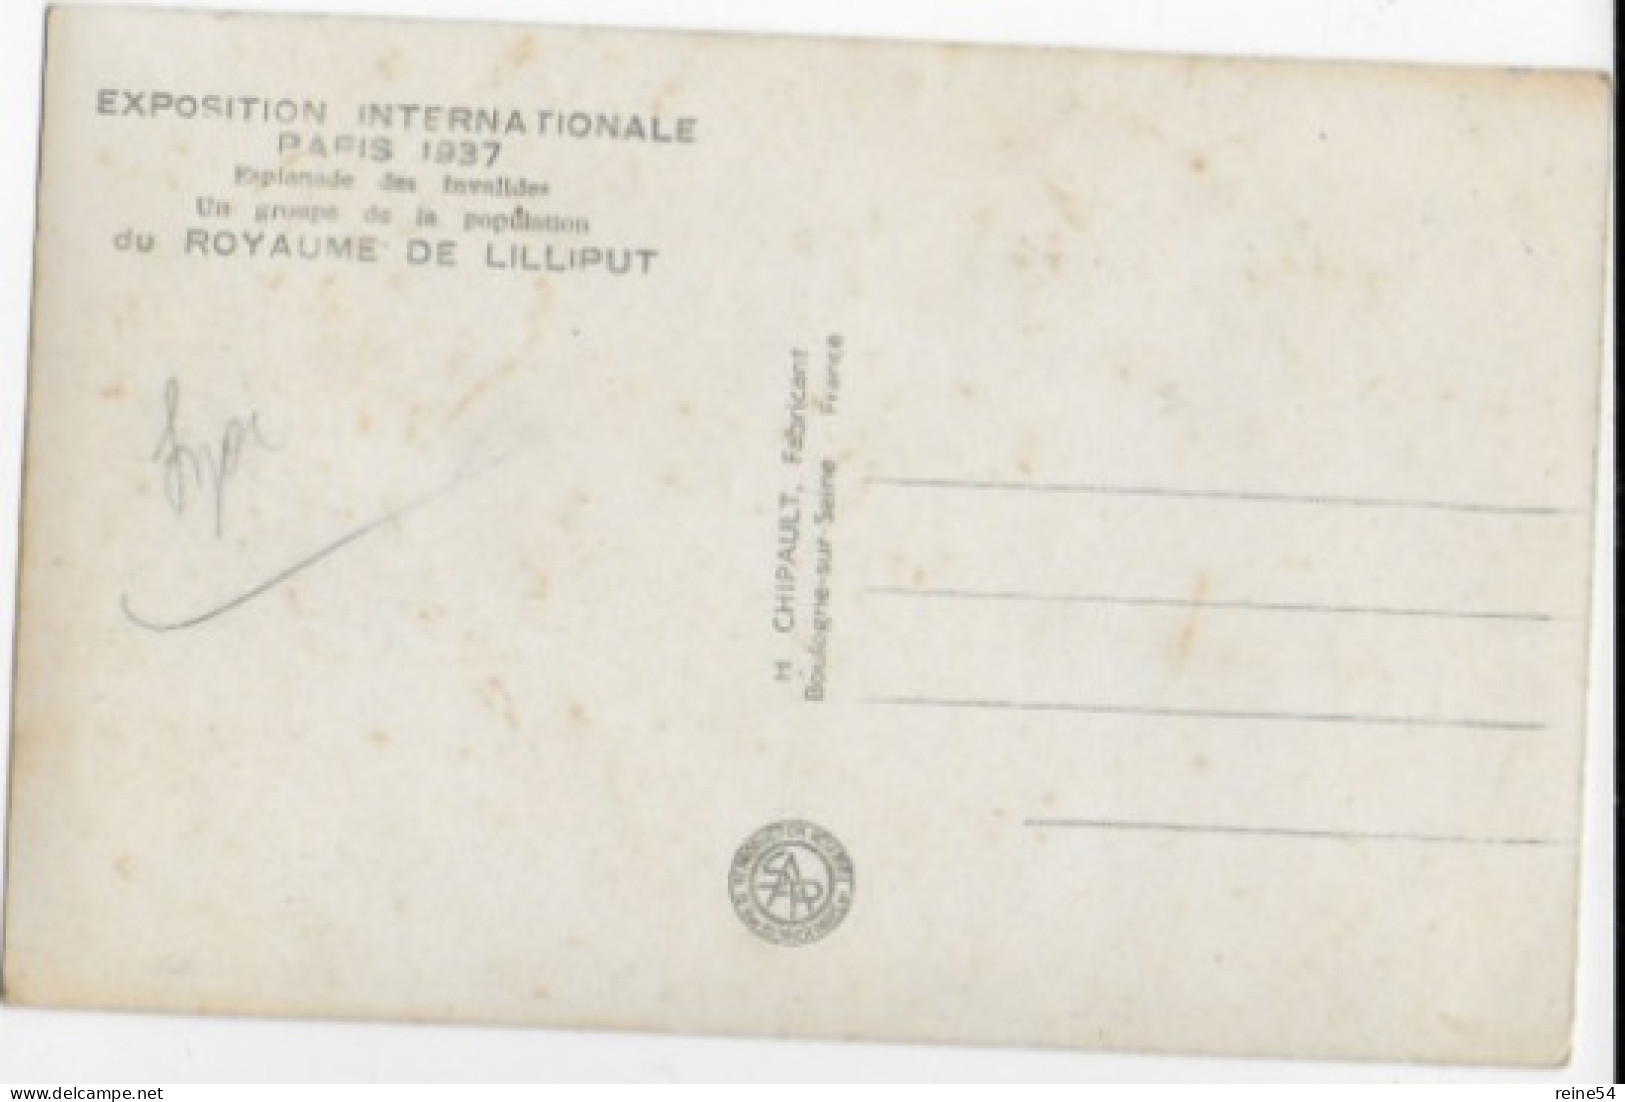 75 EXPO. PARIS 1937 (Paris 7e) Esplanade Des Invalides-Un Groupe De La Population Du Royaume De  Lilliput -Edit.Chipault - Ausstellungen